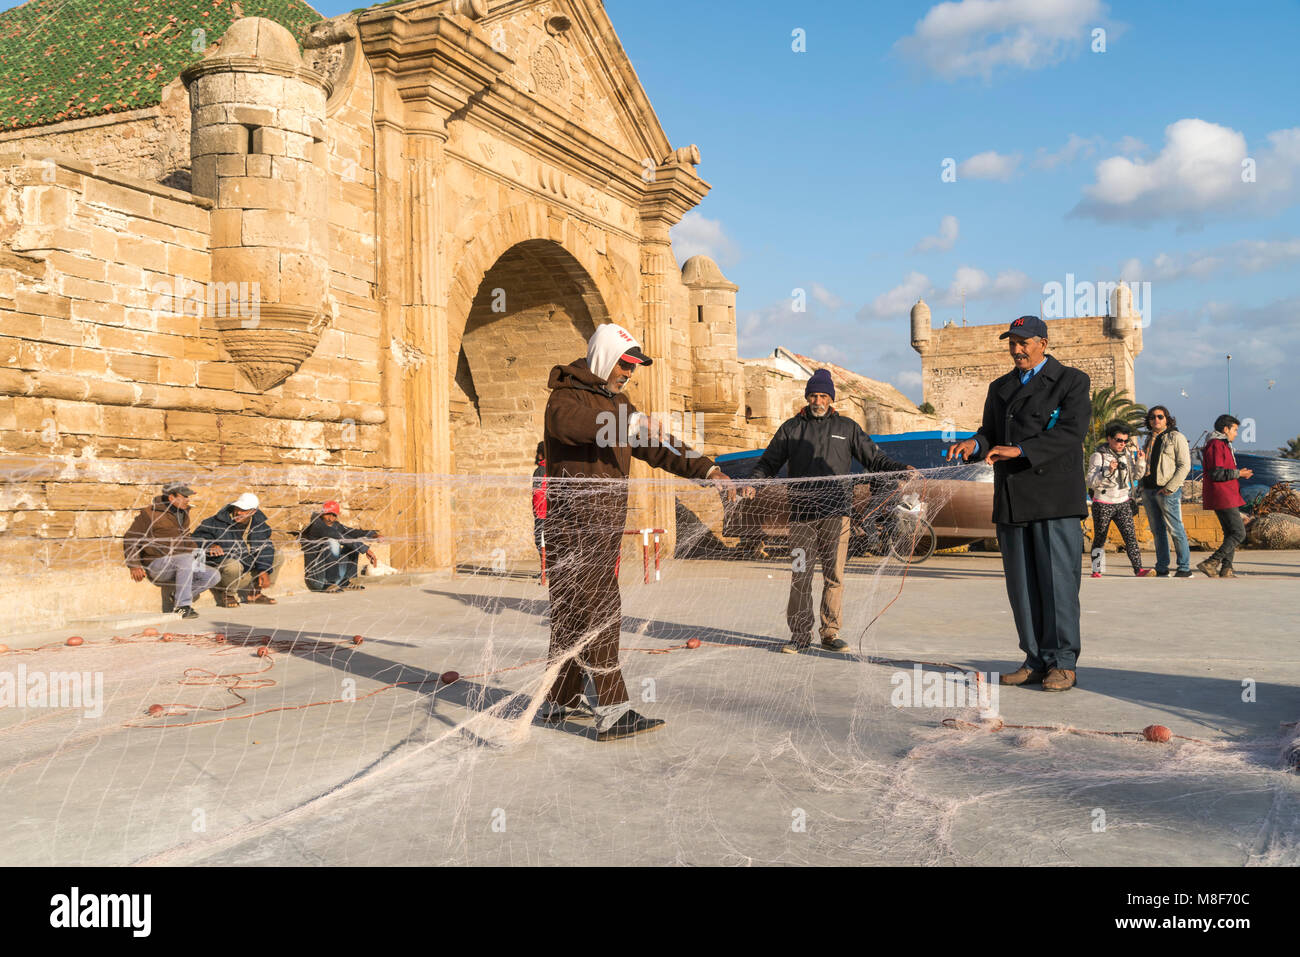 Fischer beim reparieren ohrer Netzte am Hafentor Porte de la Marine von Essaouira, Königreich Marokko, Afrika  |  fishermen repairing their nets at th Stock Photo